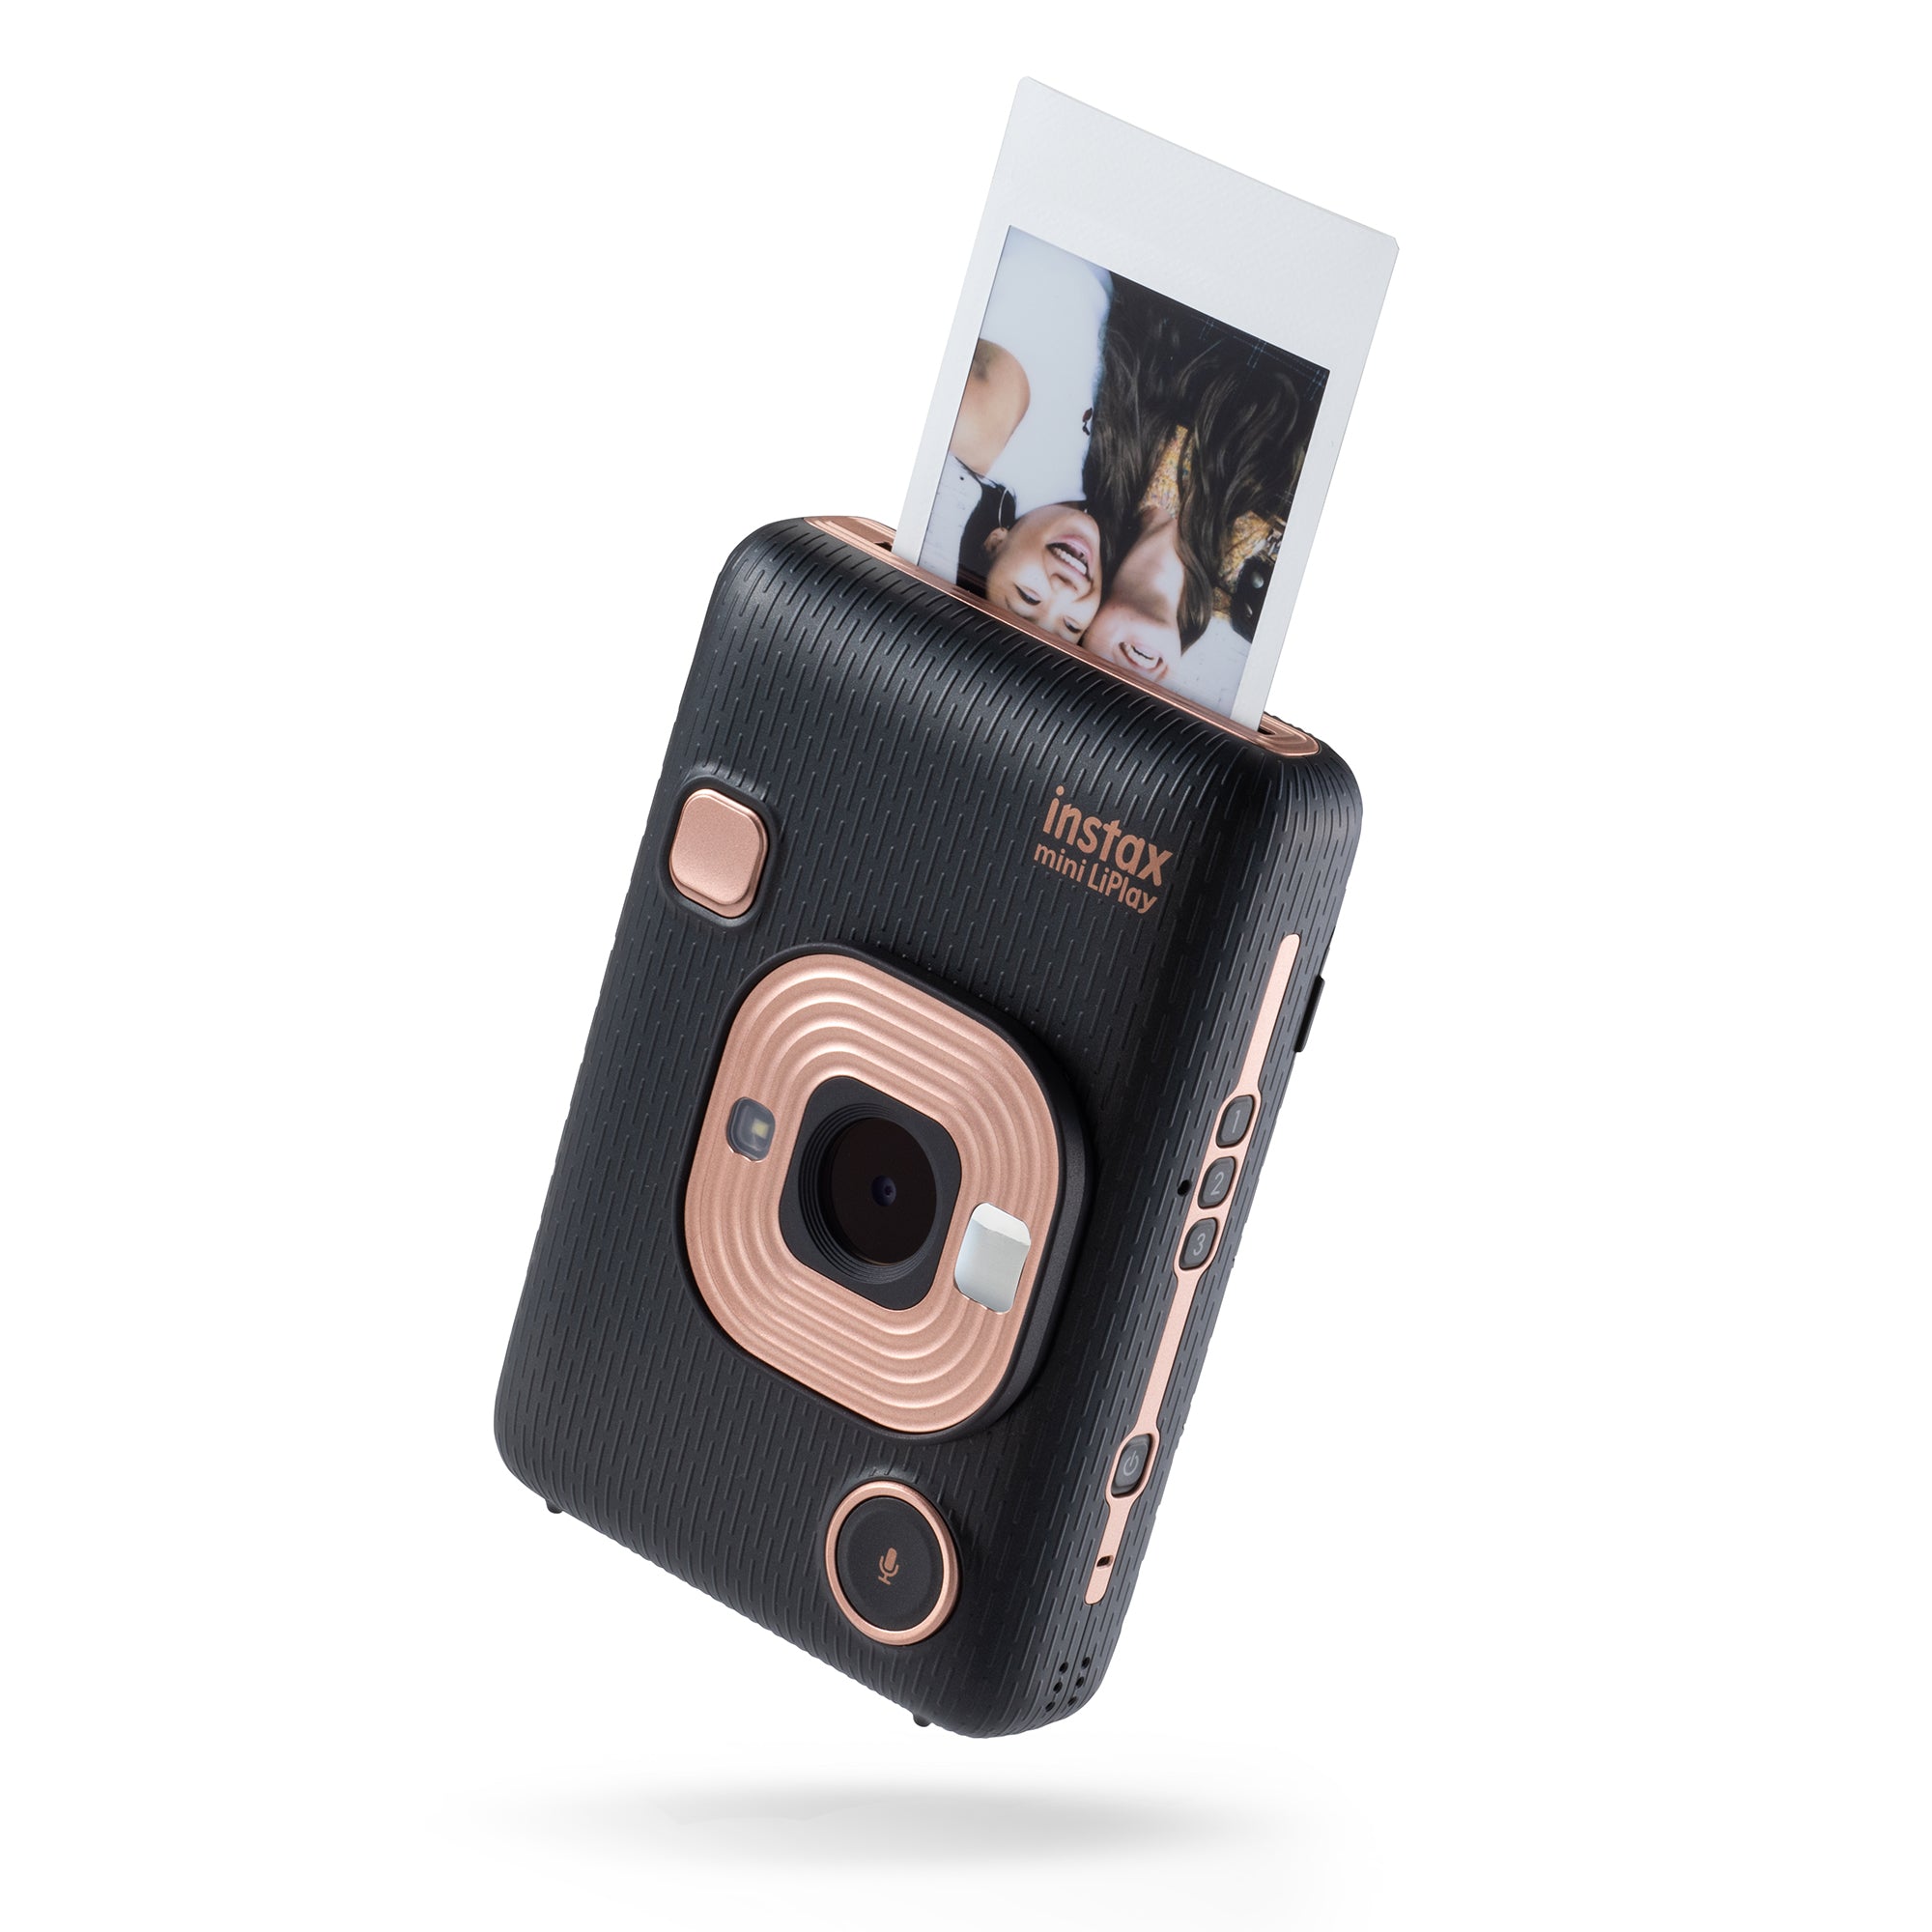 Fujifilm Instax Mini Li-Play Hybrid Instant Camera